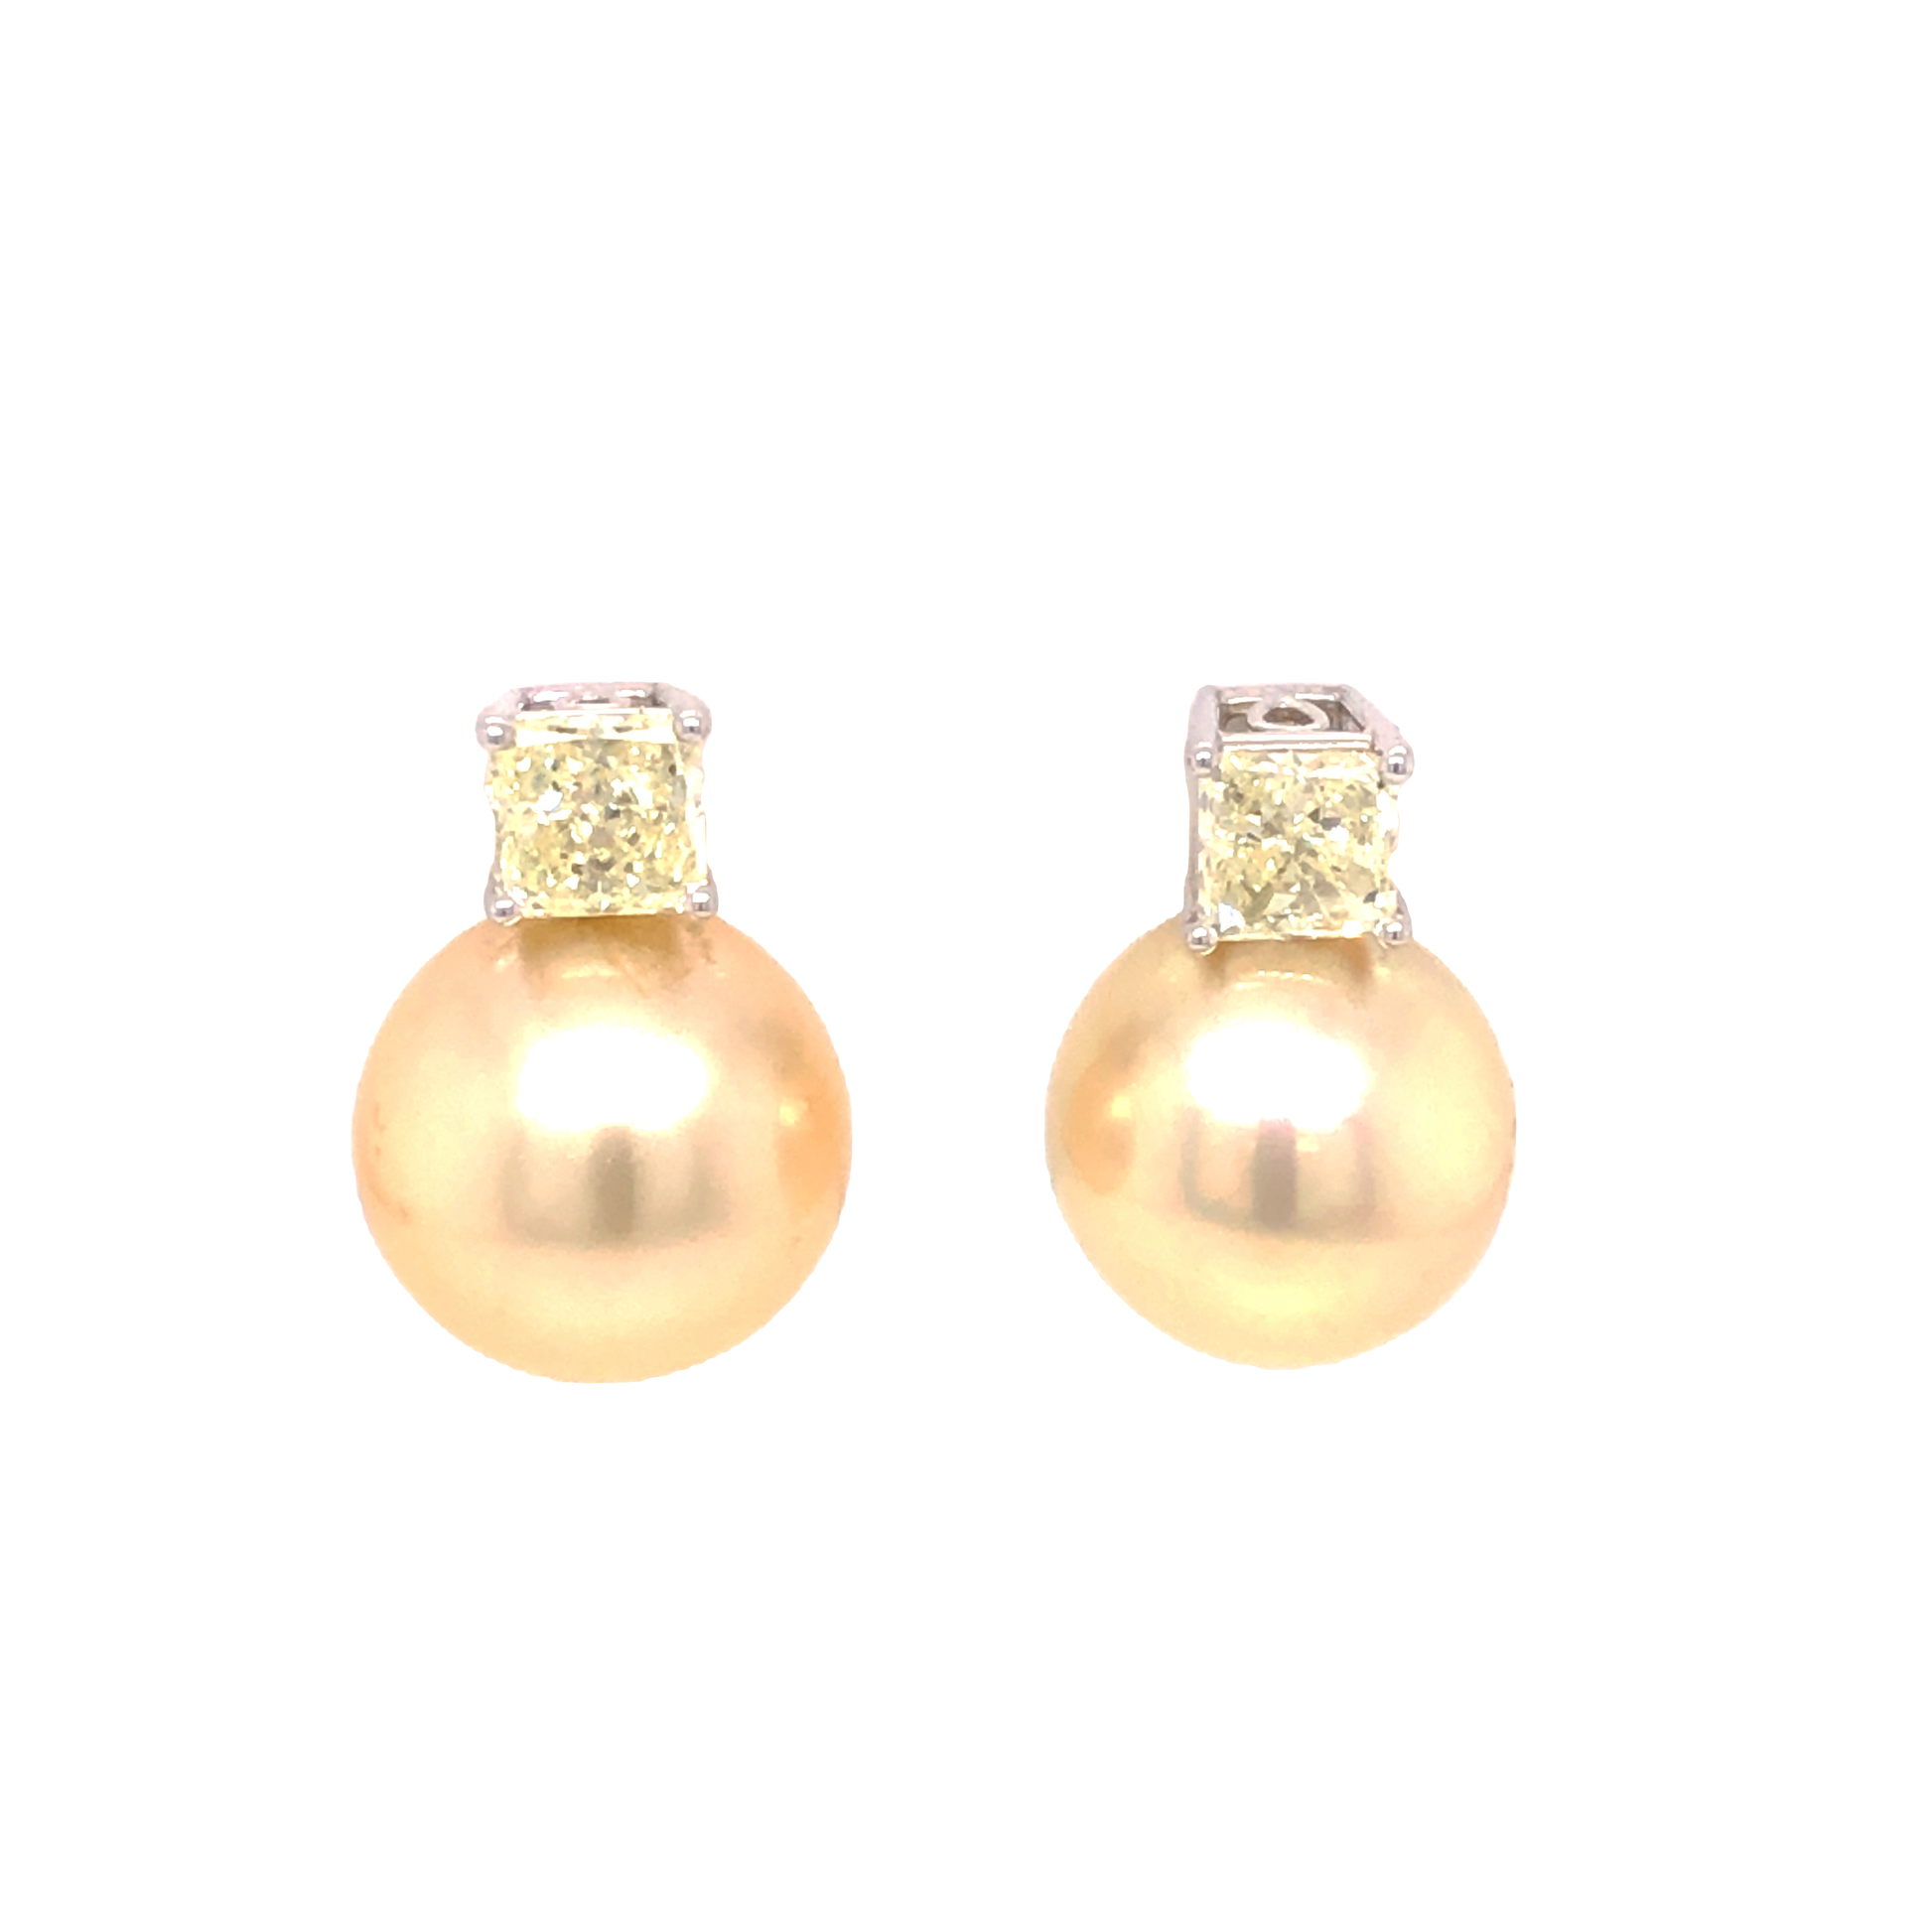 1.04 Fancy Light Yellow Diamond & Pearl Earrings in Platinum